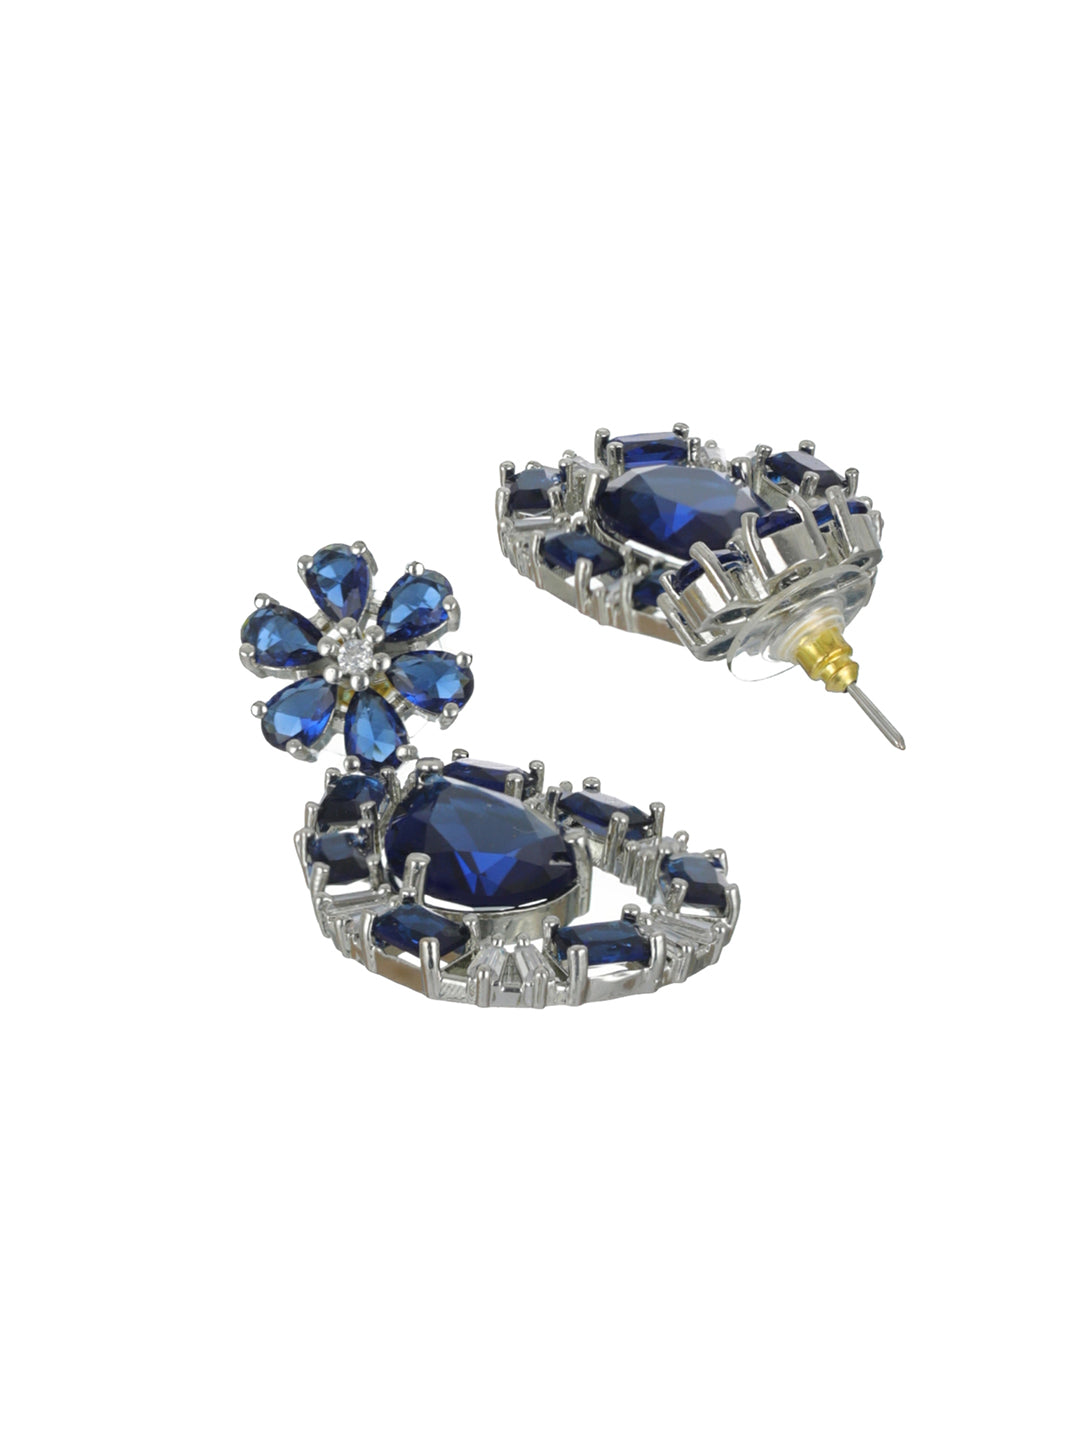 Priyaasi Blue Floral Pear AD Silver-Plated Drop Earrings